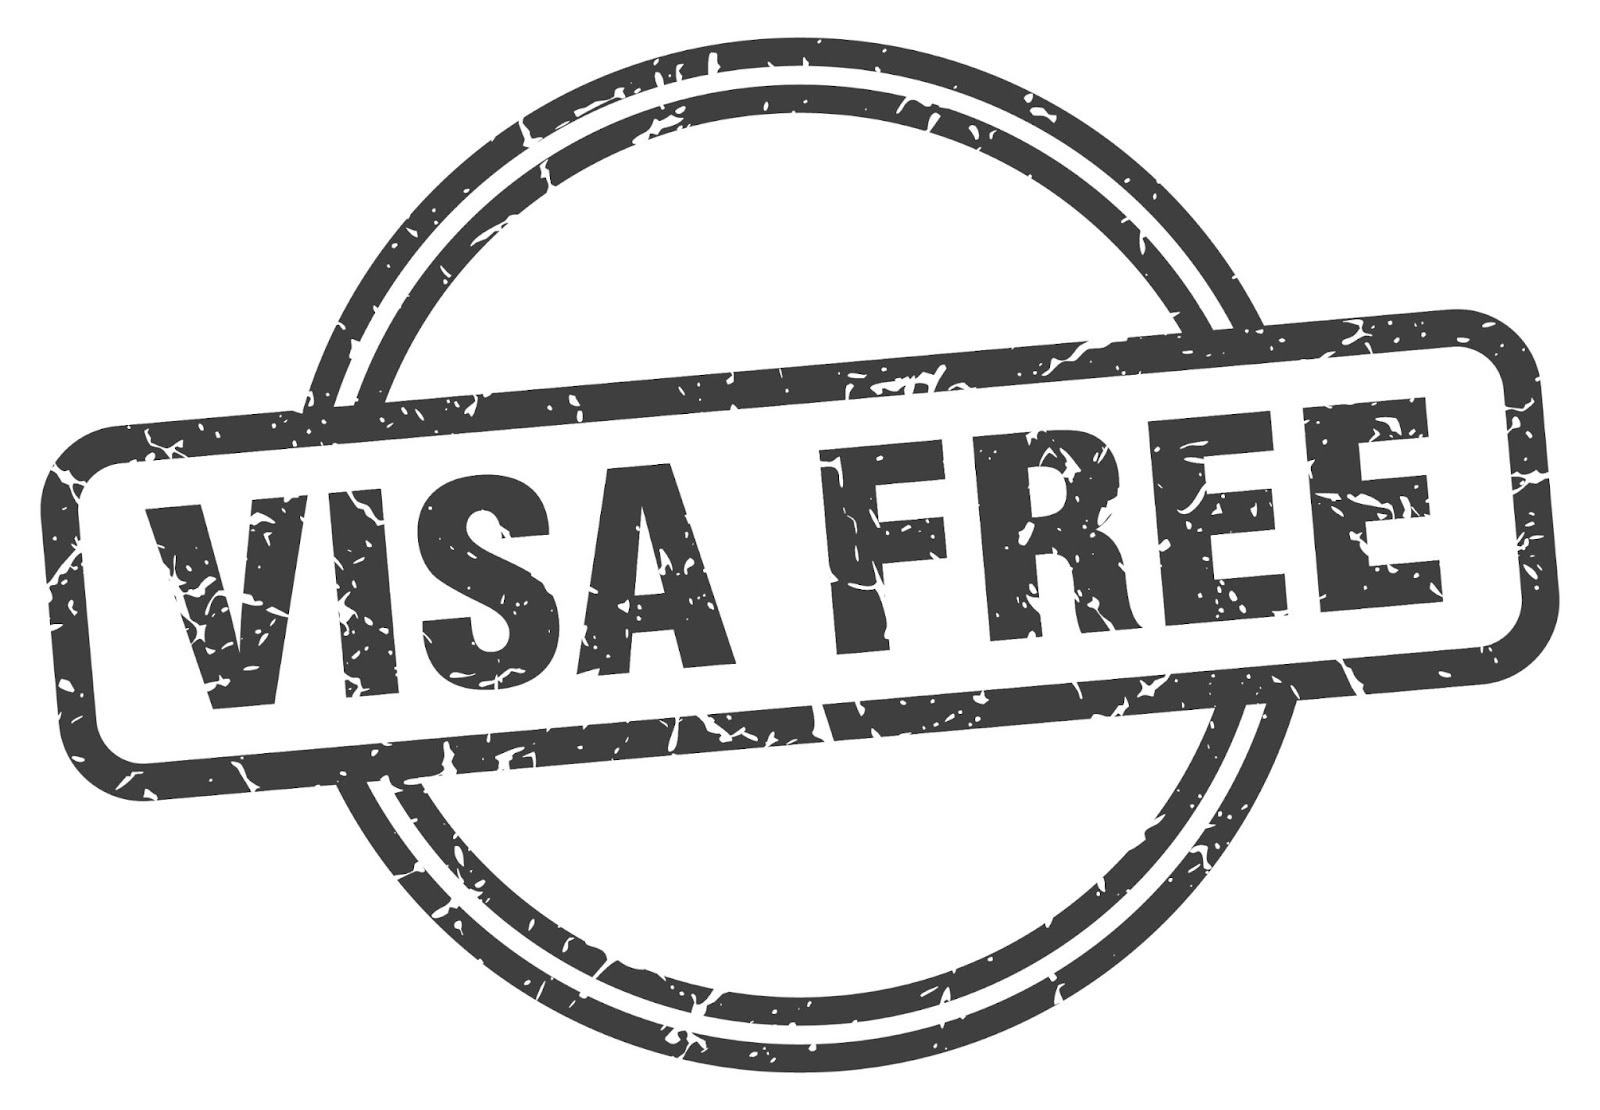 Visa free grunge stamp